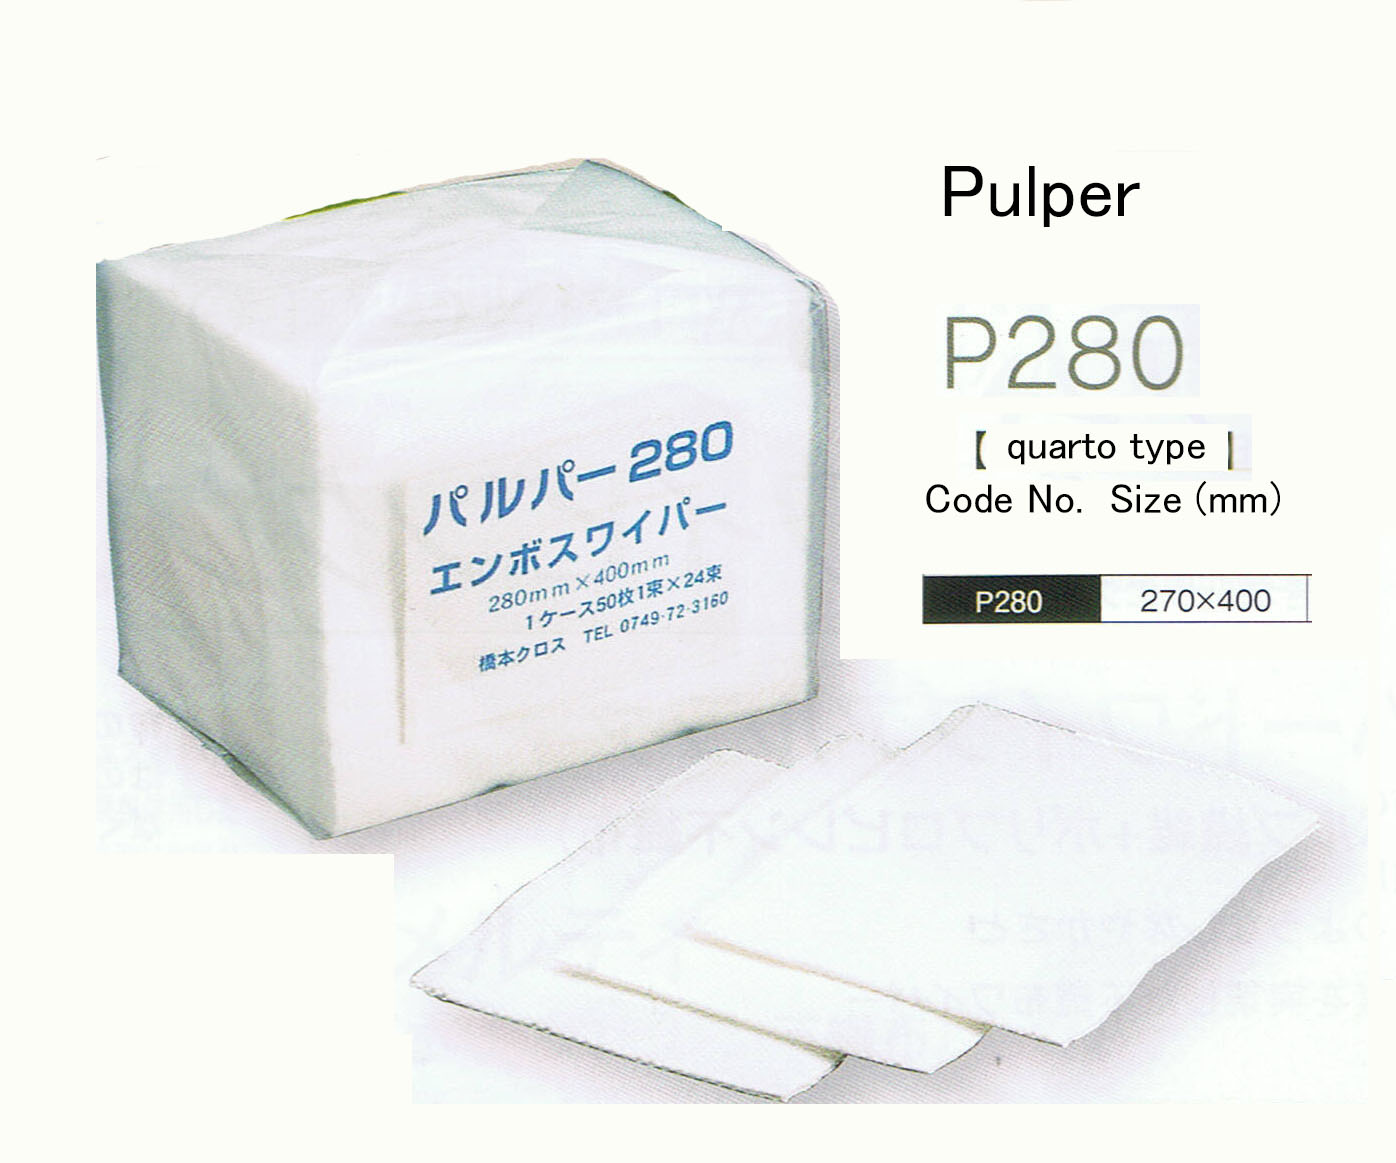 Pulper P280